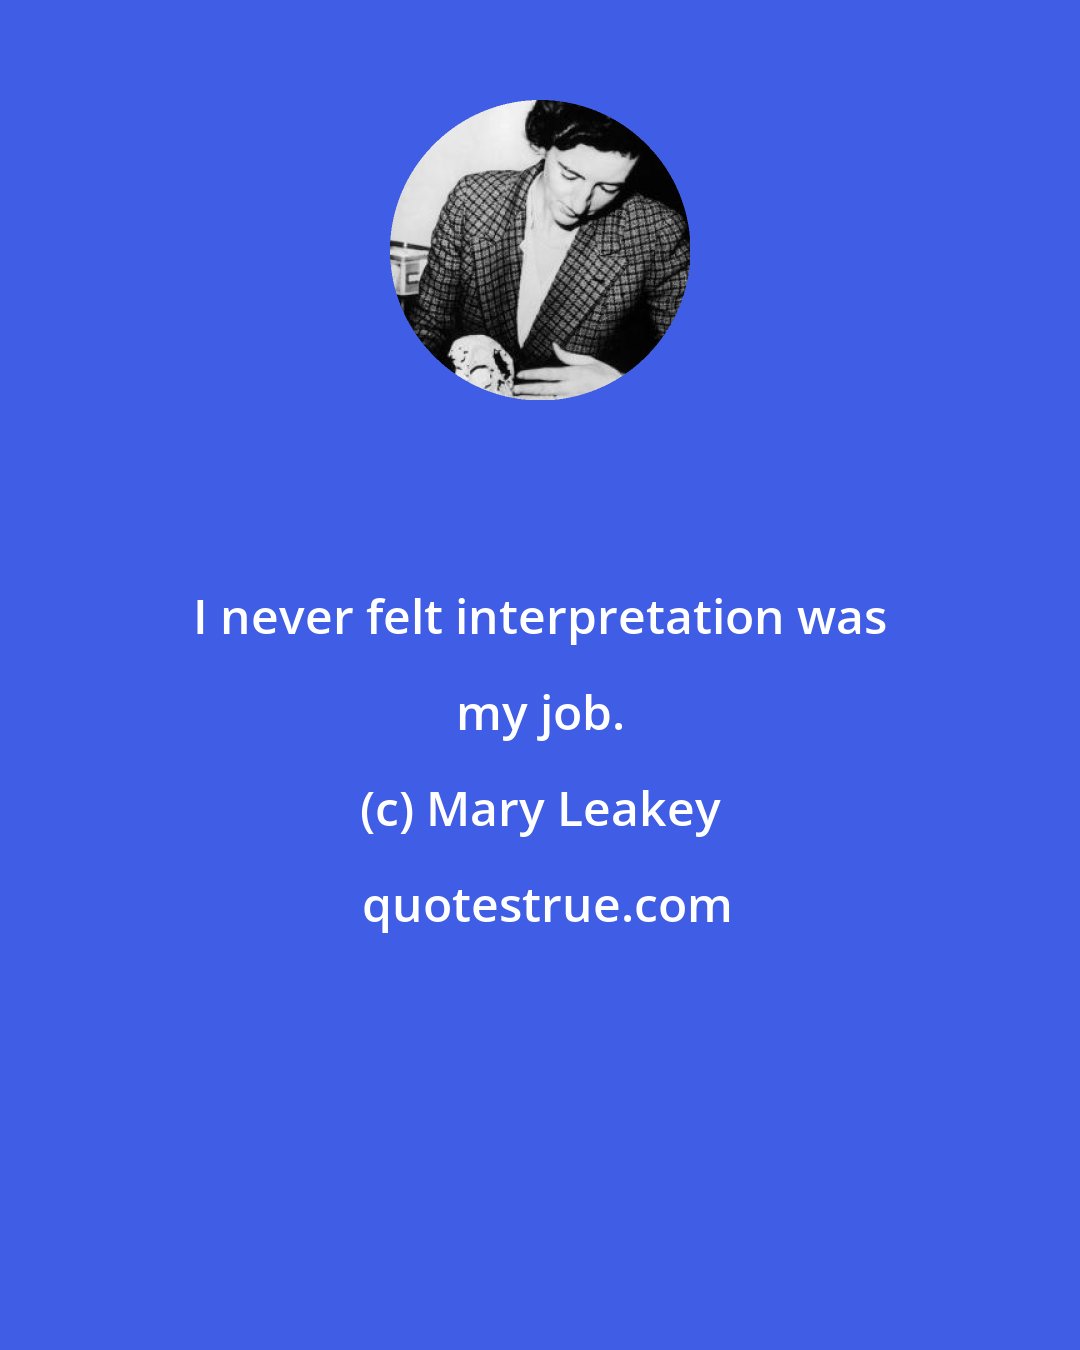 Mary Leakey: I never felt interpretation was my job.